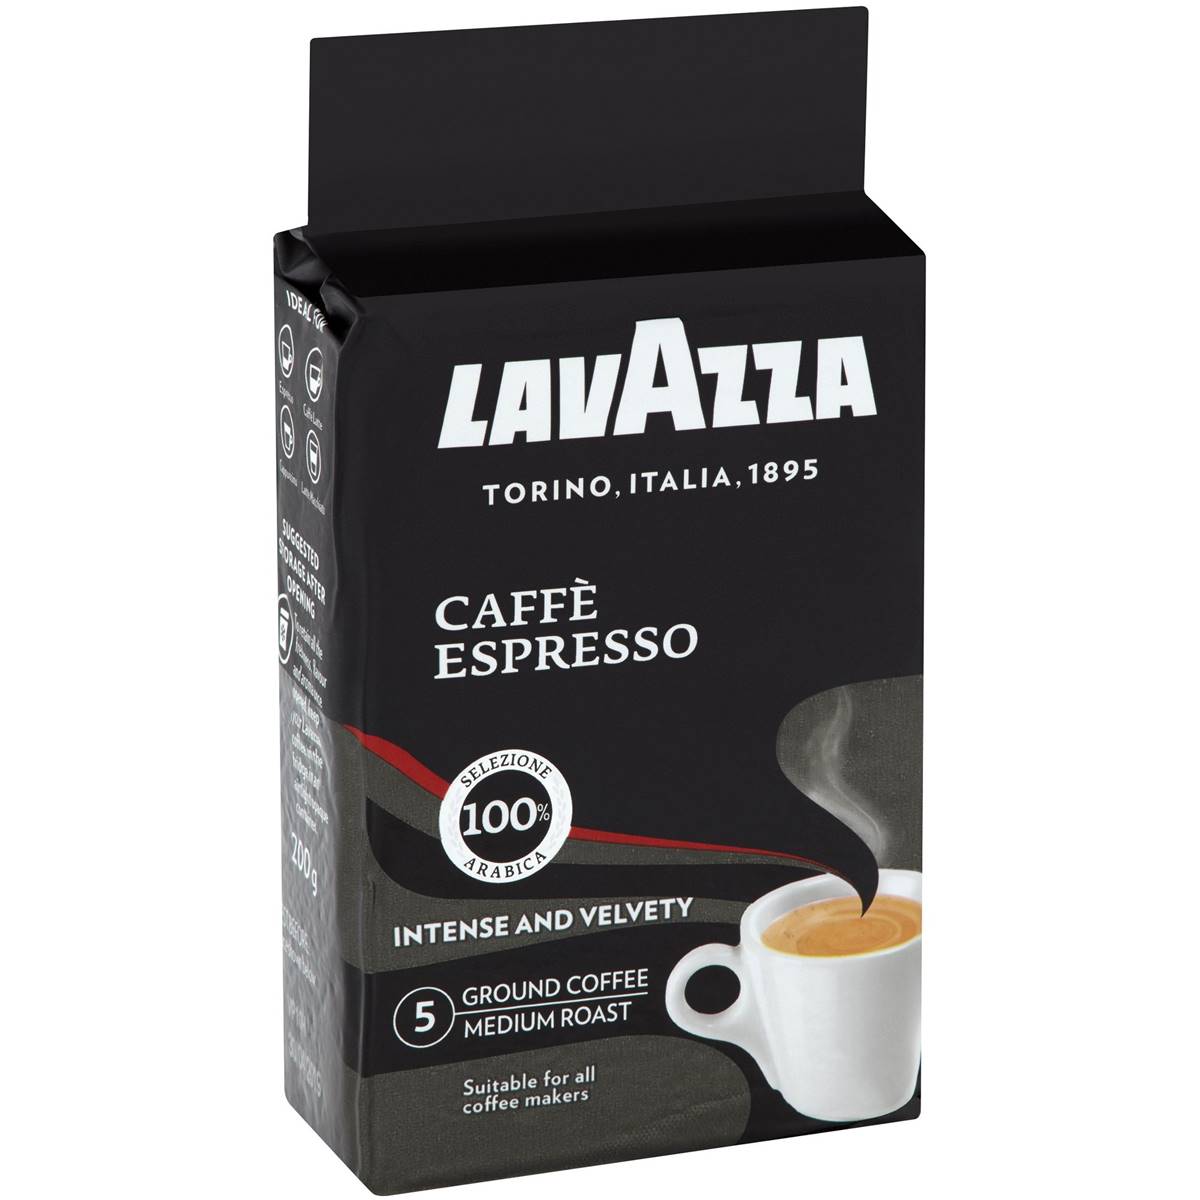 Lavazza Ground Coffee Caffe Espresso